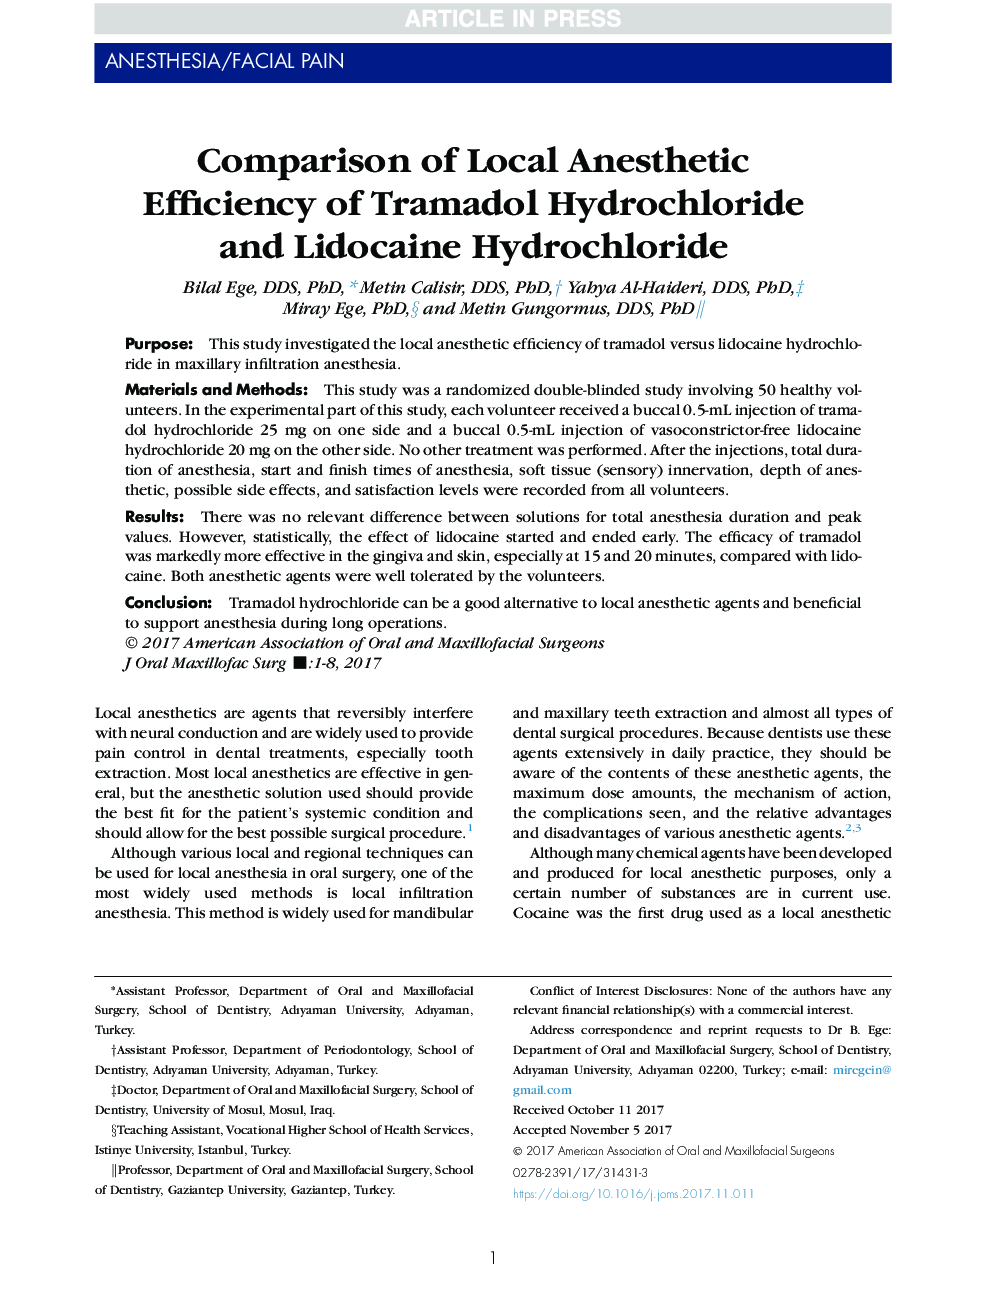 مقایسه کارآیی بی حسی موضعی ترامادول هیدروکلرید و هیدروکلرید لیدوکائین 